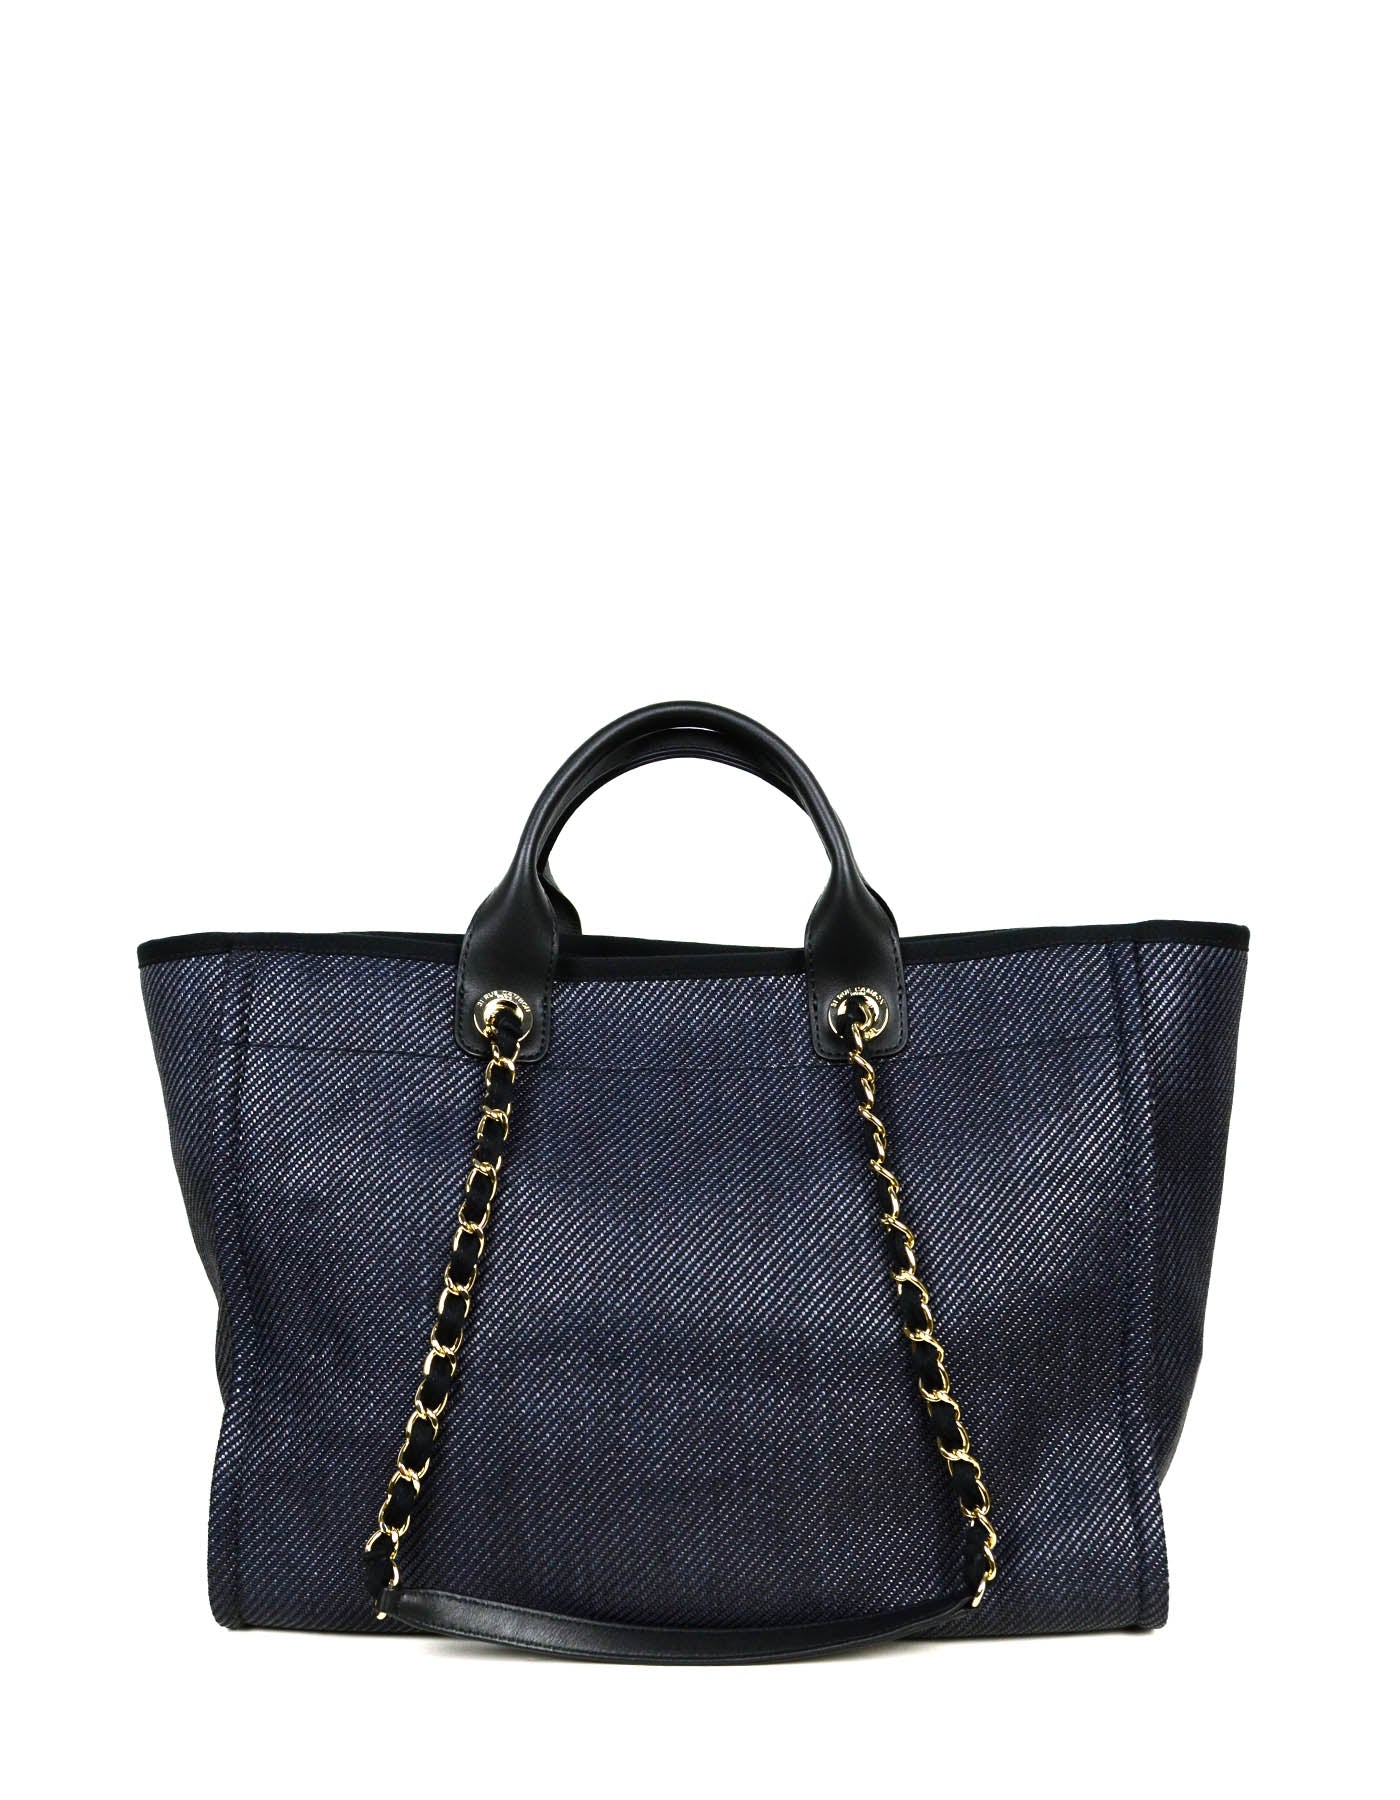 Replica Chanel Deauville Mixed Fibers Calfskin Shopping Bag A66943 Pin